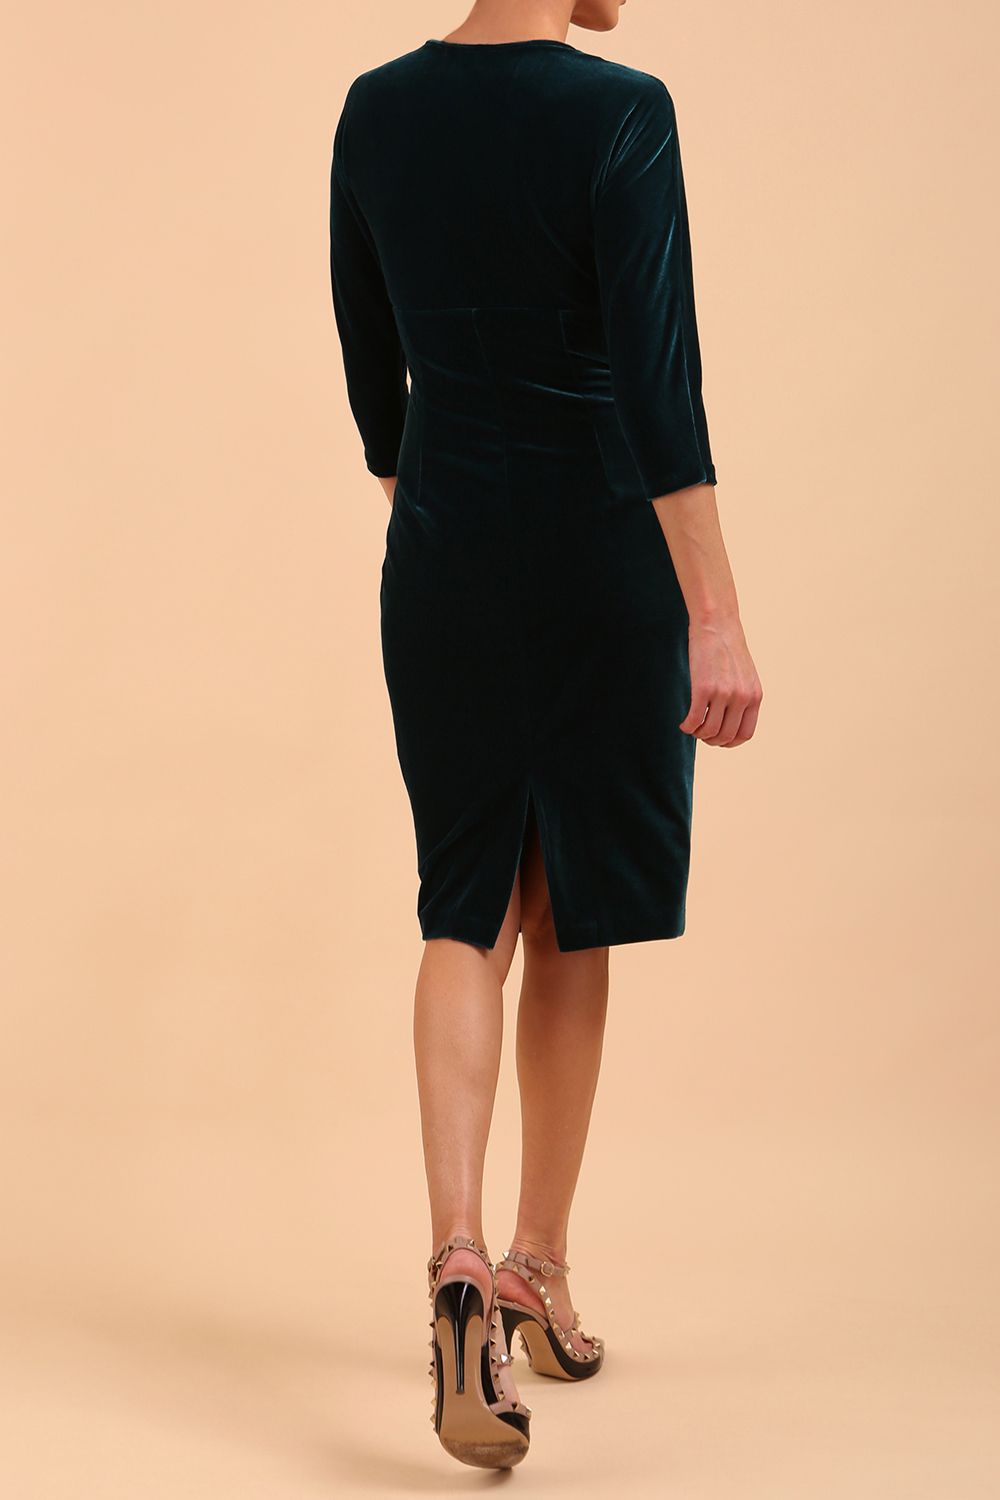 A model is wearing a velvet pencil sweetheart neckline dress by diva catwalk in teal